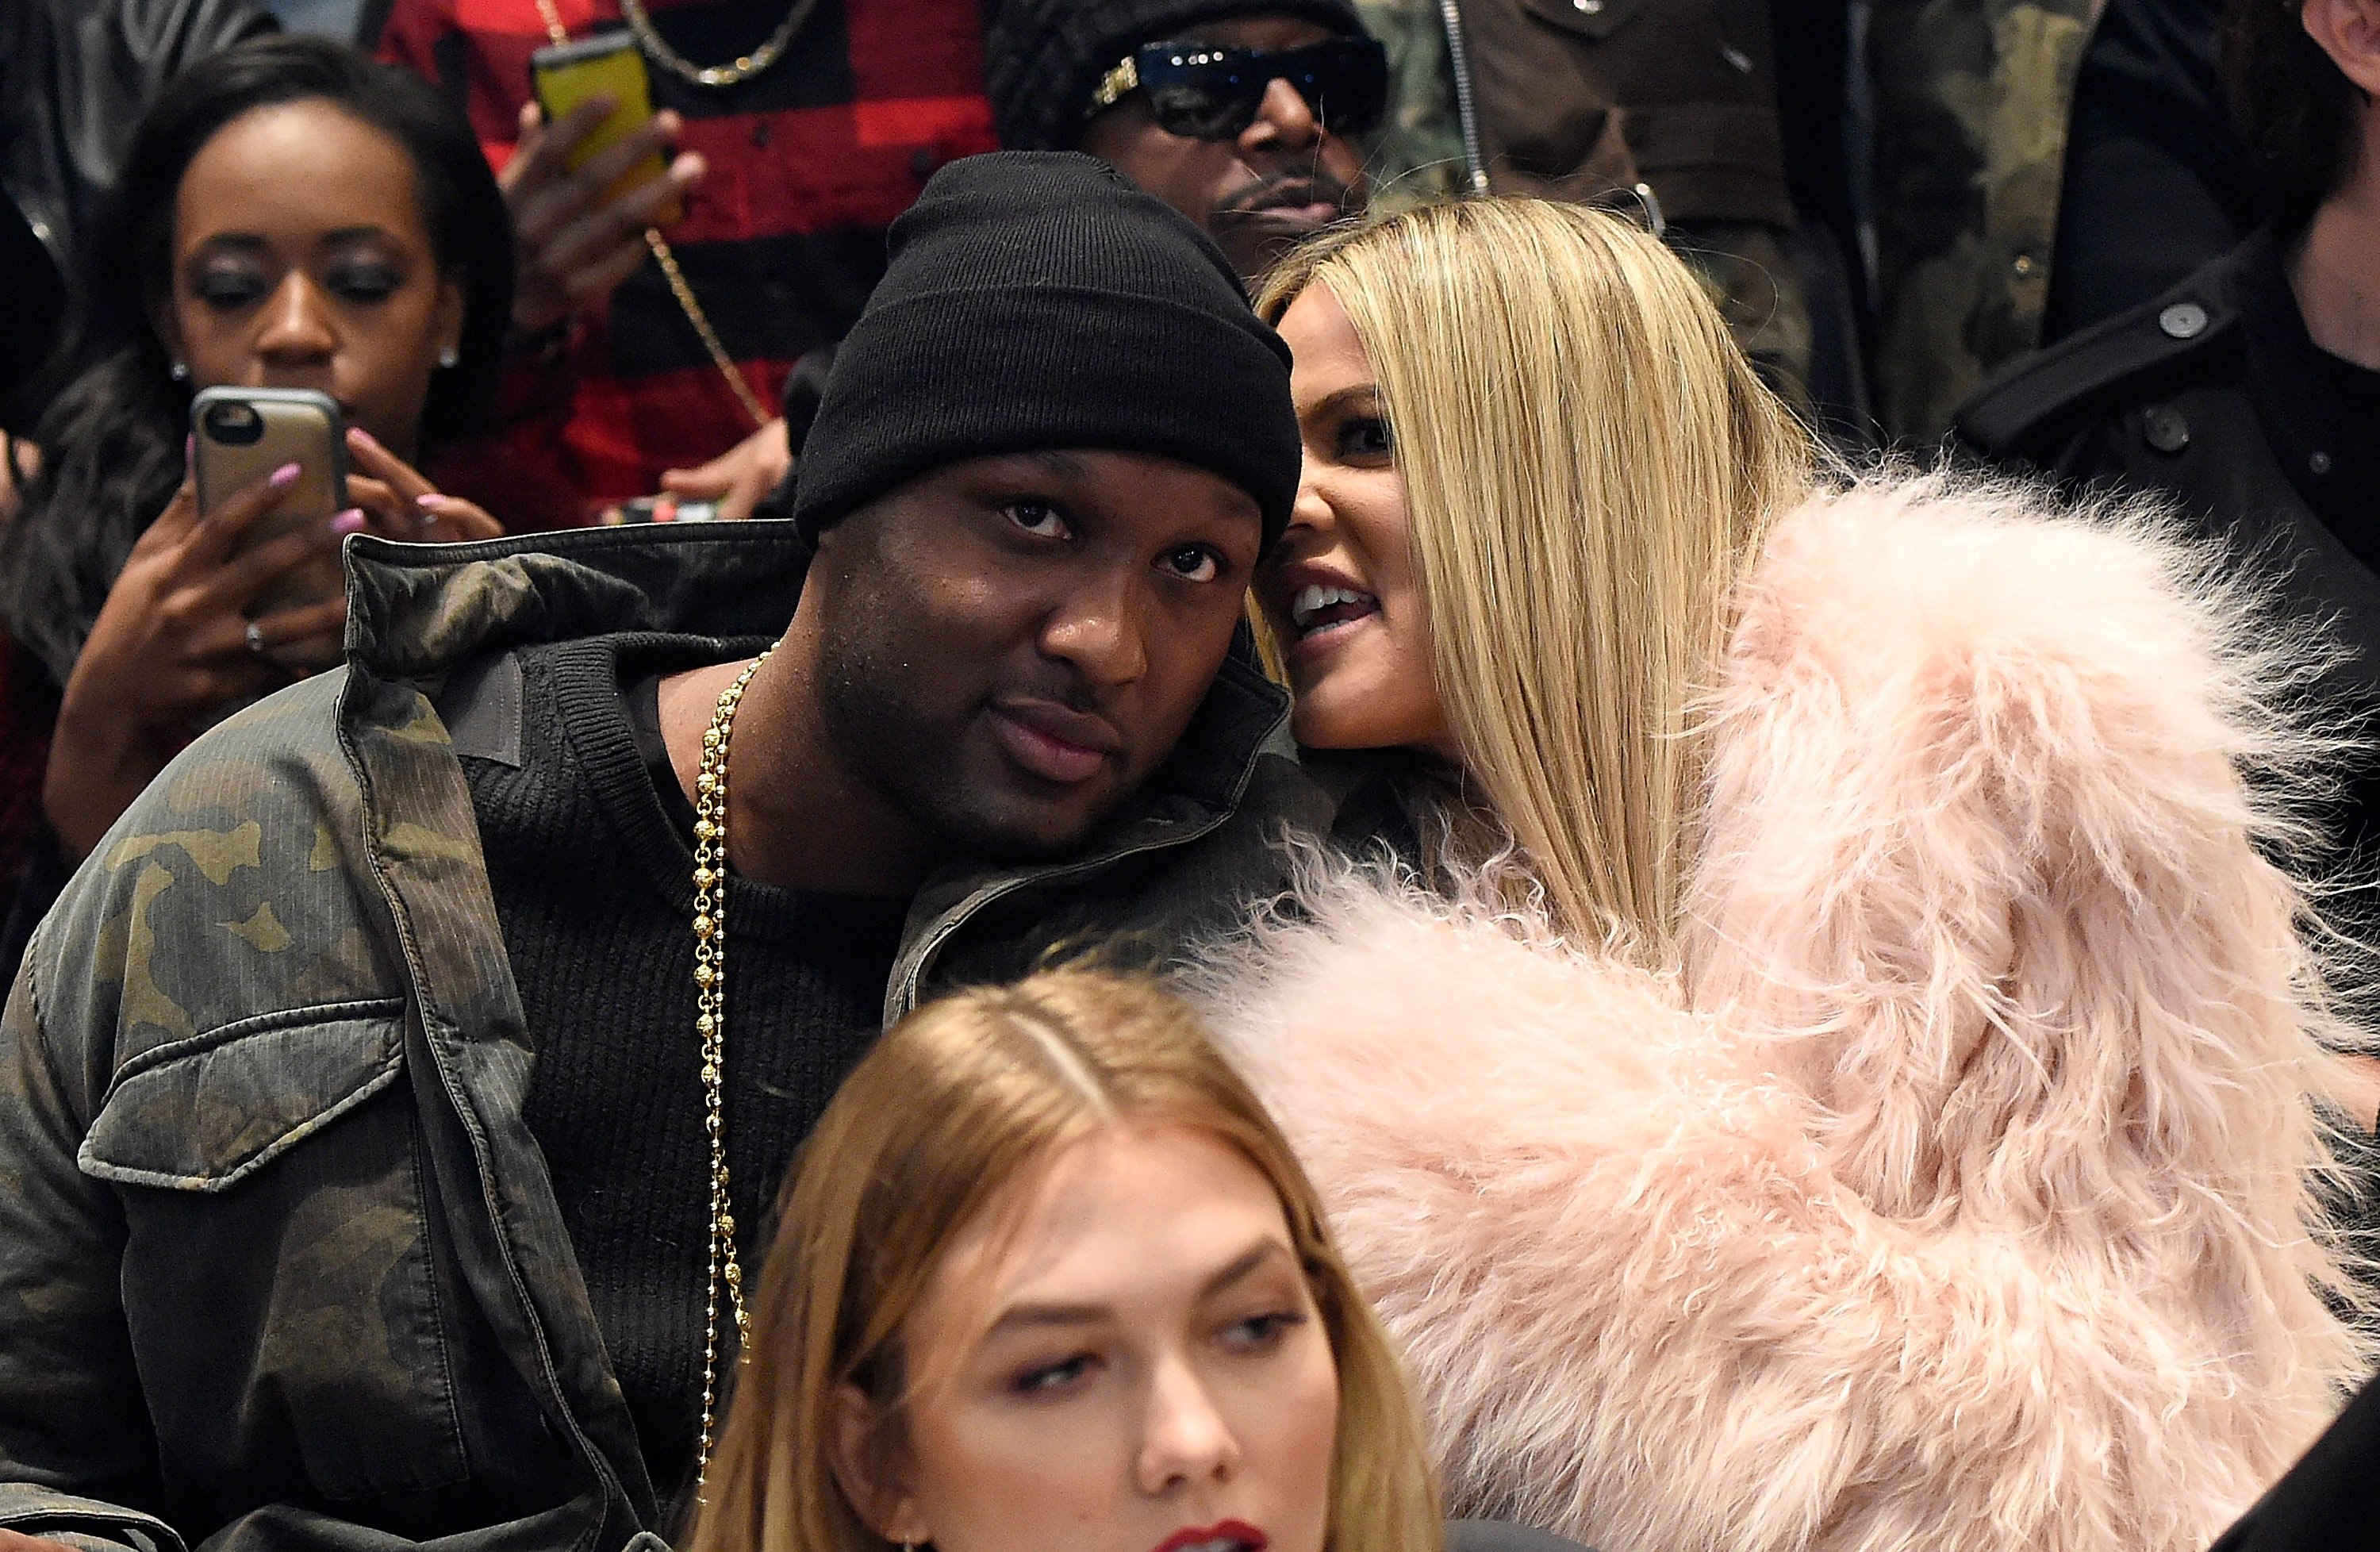 Lamar Odom and Khloe Kardashian at a Fashion Week show.